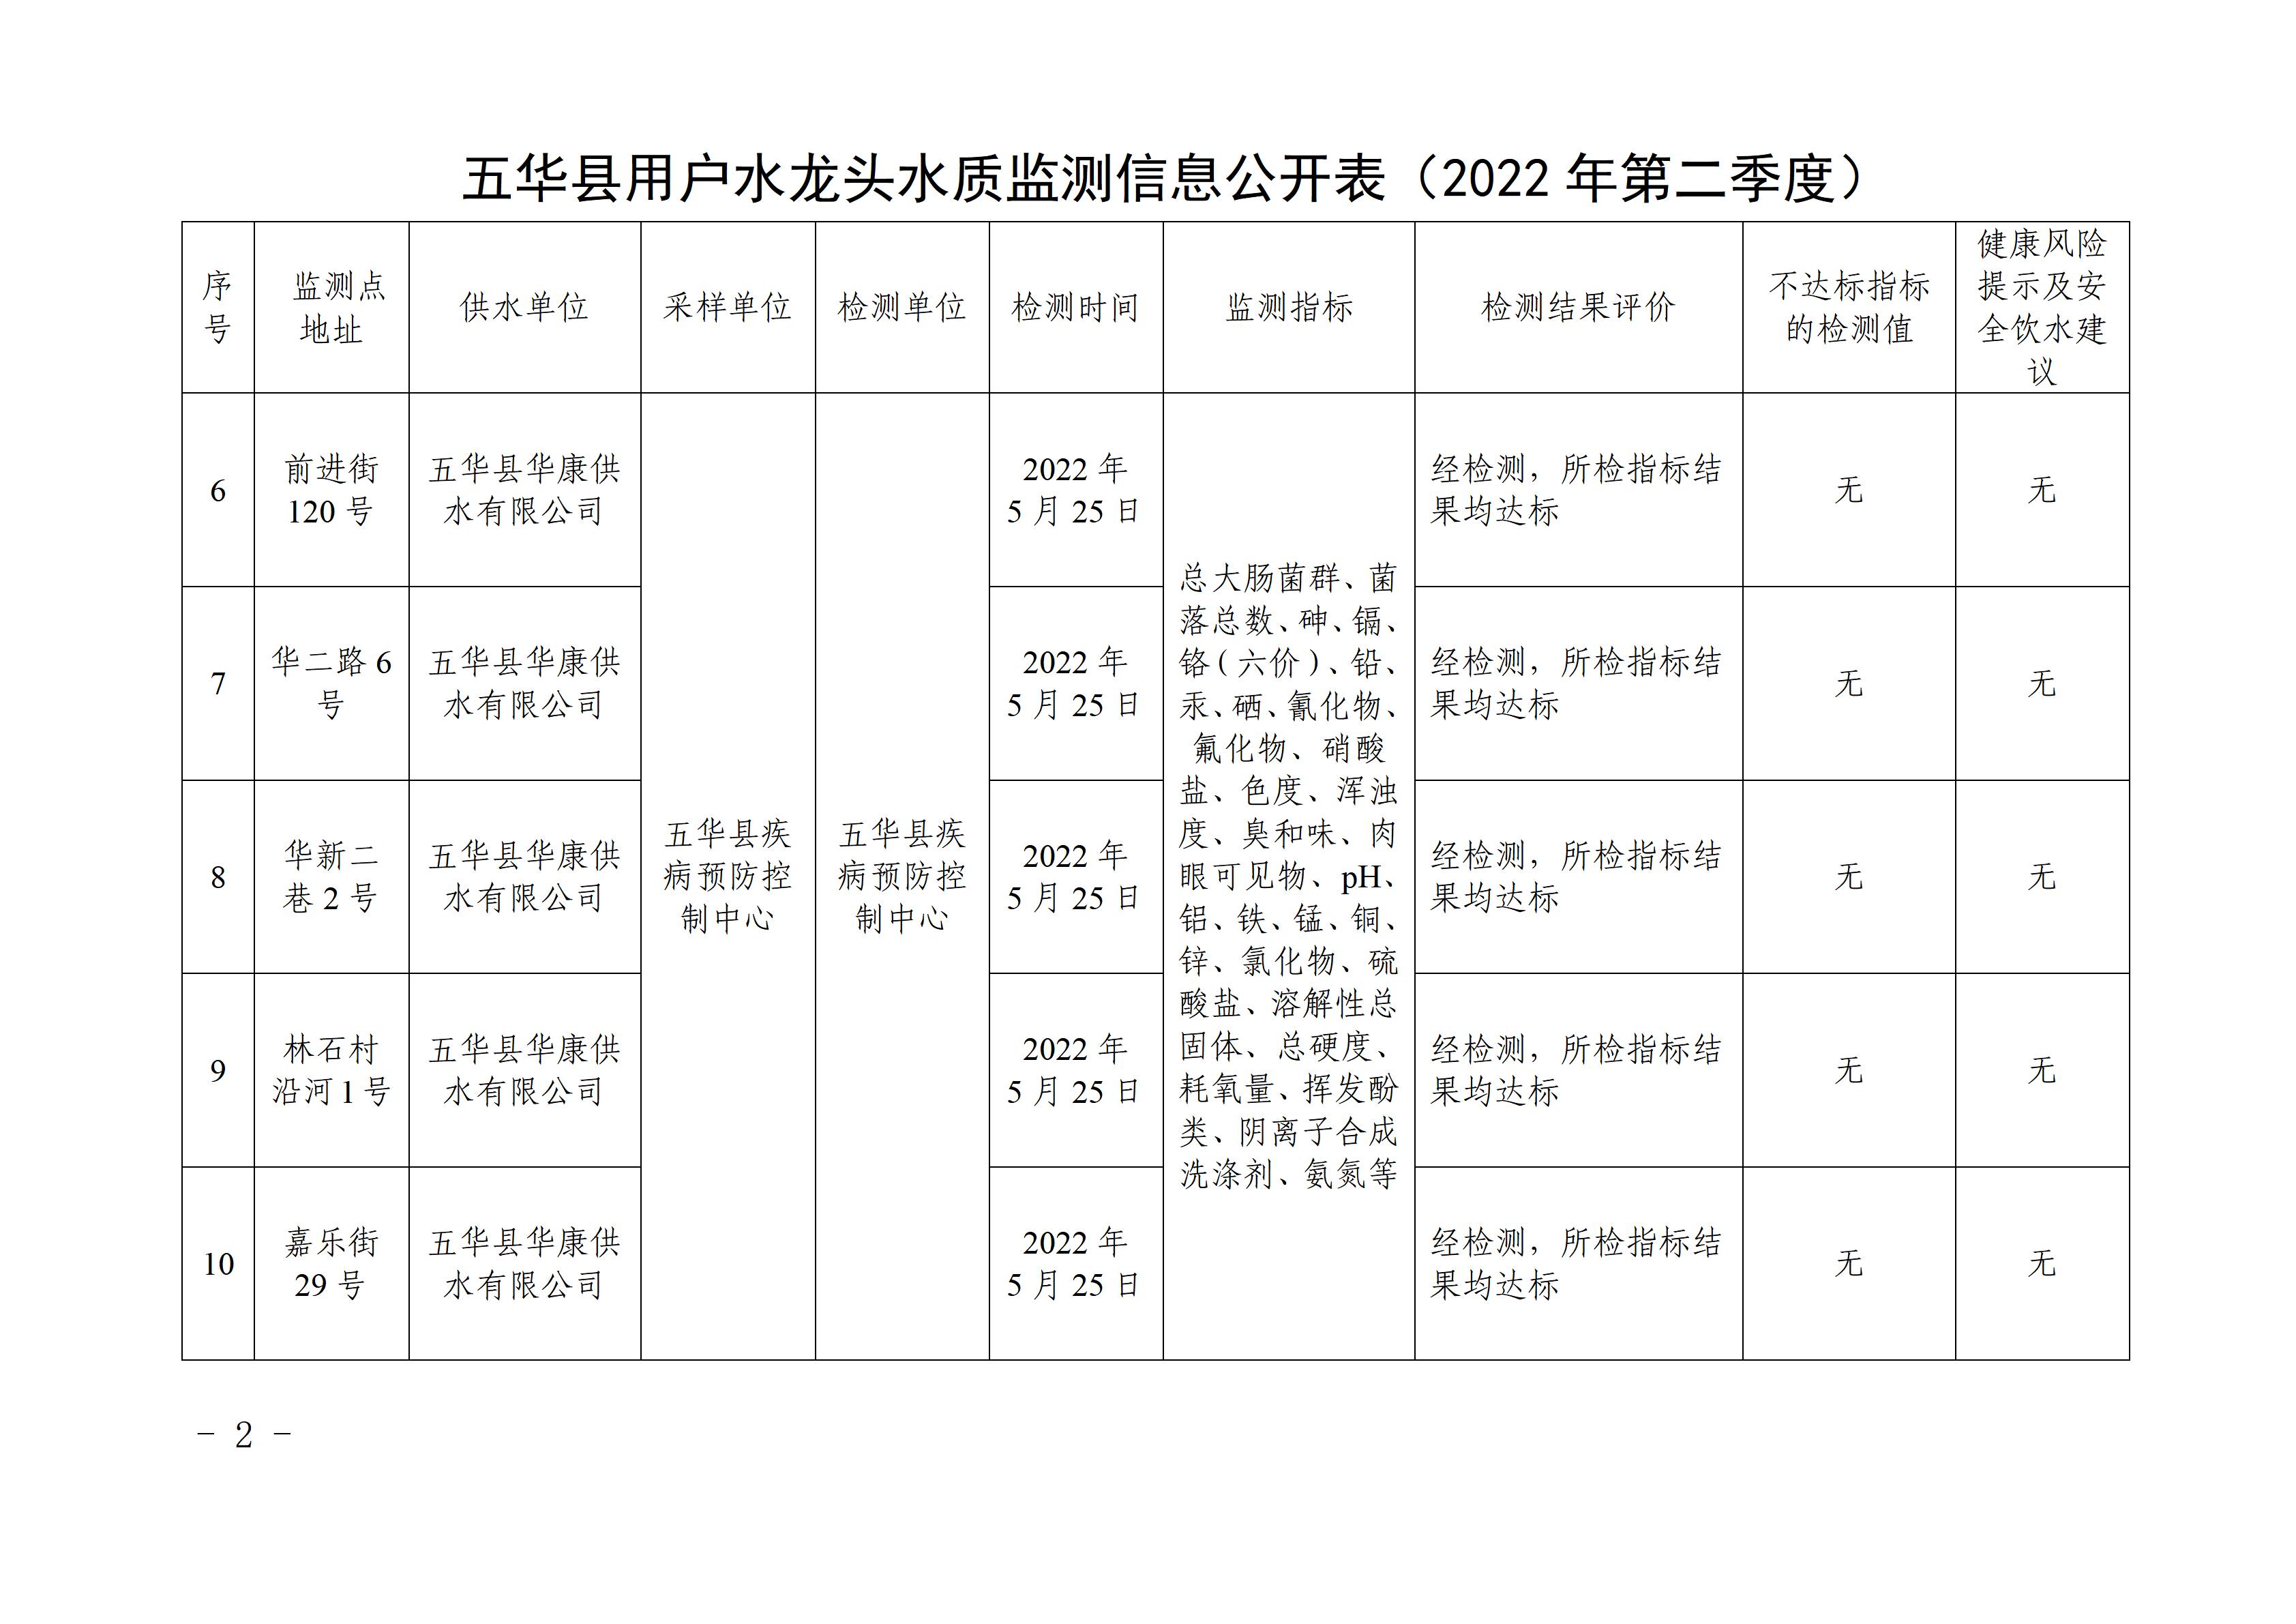 关于五华县2022年第二季度用户水龙头水质监测结果的报告 - 副本_02.png